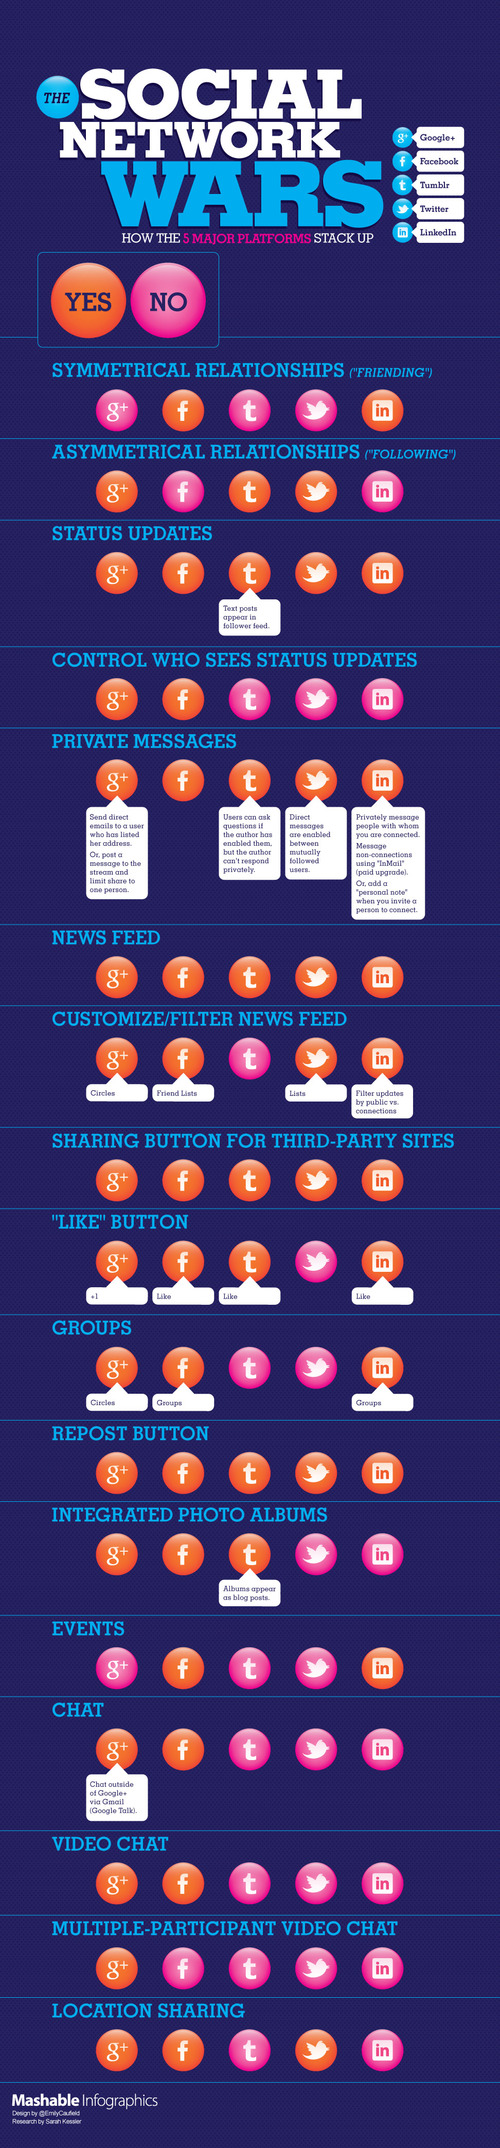 Social-network-comparison-mashable-infographics